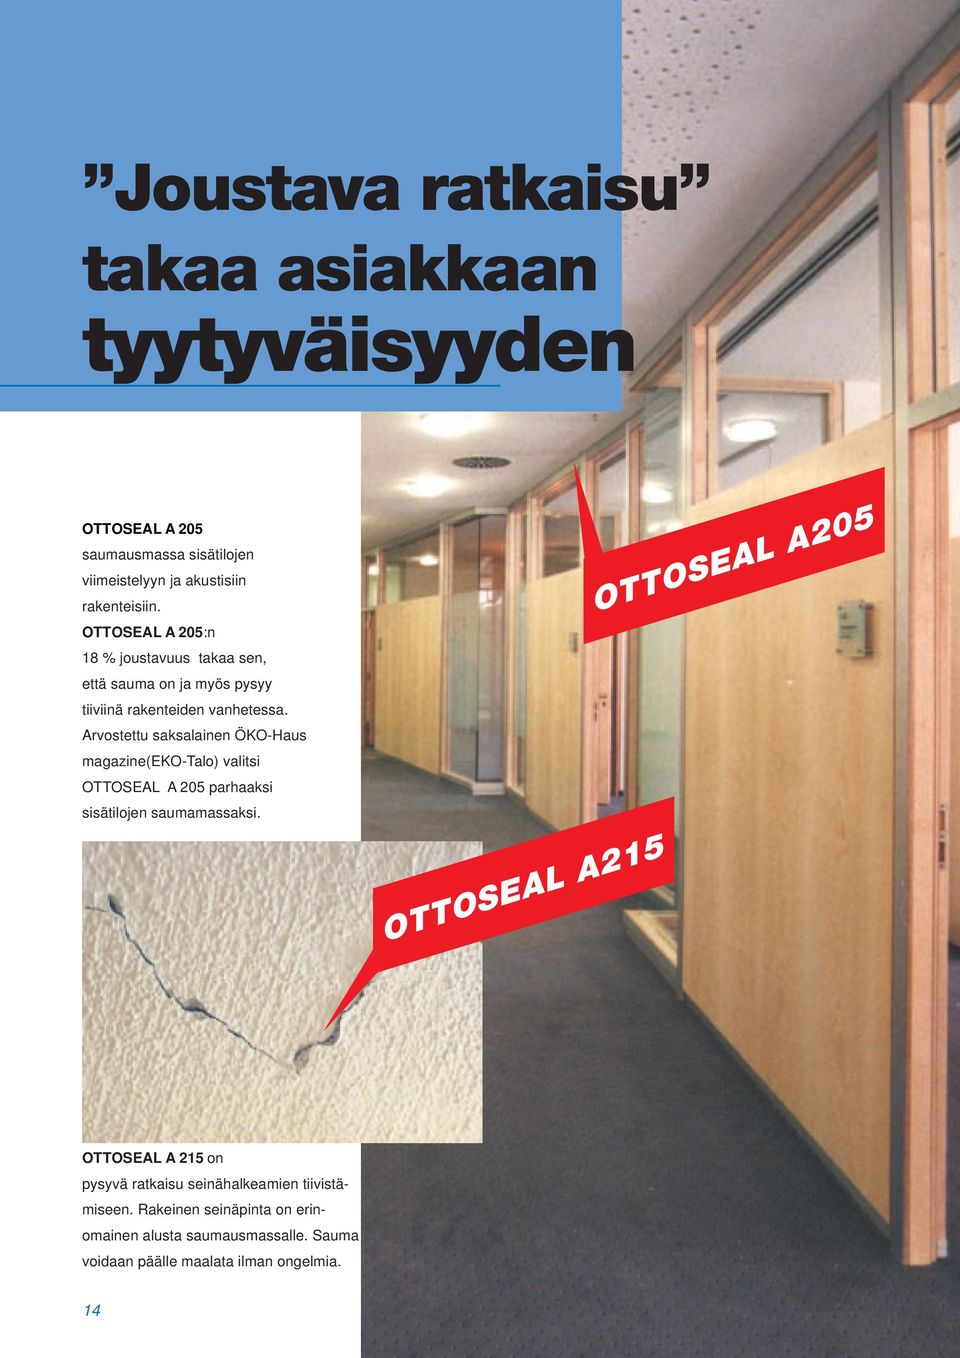 Arvostettu saksalainen ÖKO-Haus magazine(eko-talo) valitsi OTTOSEAL A 205 parhaaksi sisätilojen saumamassaksi.